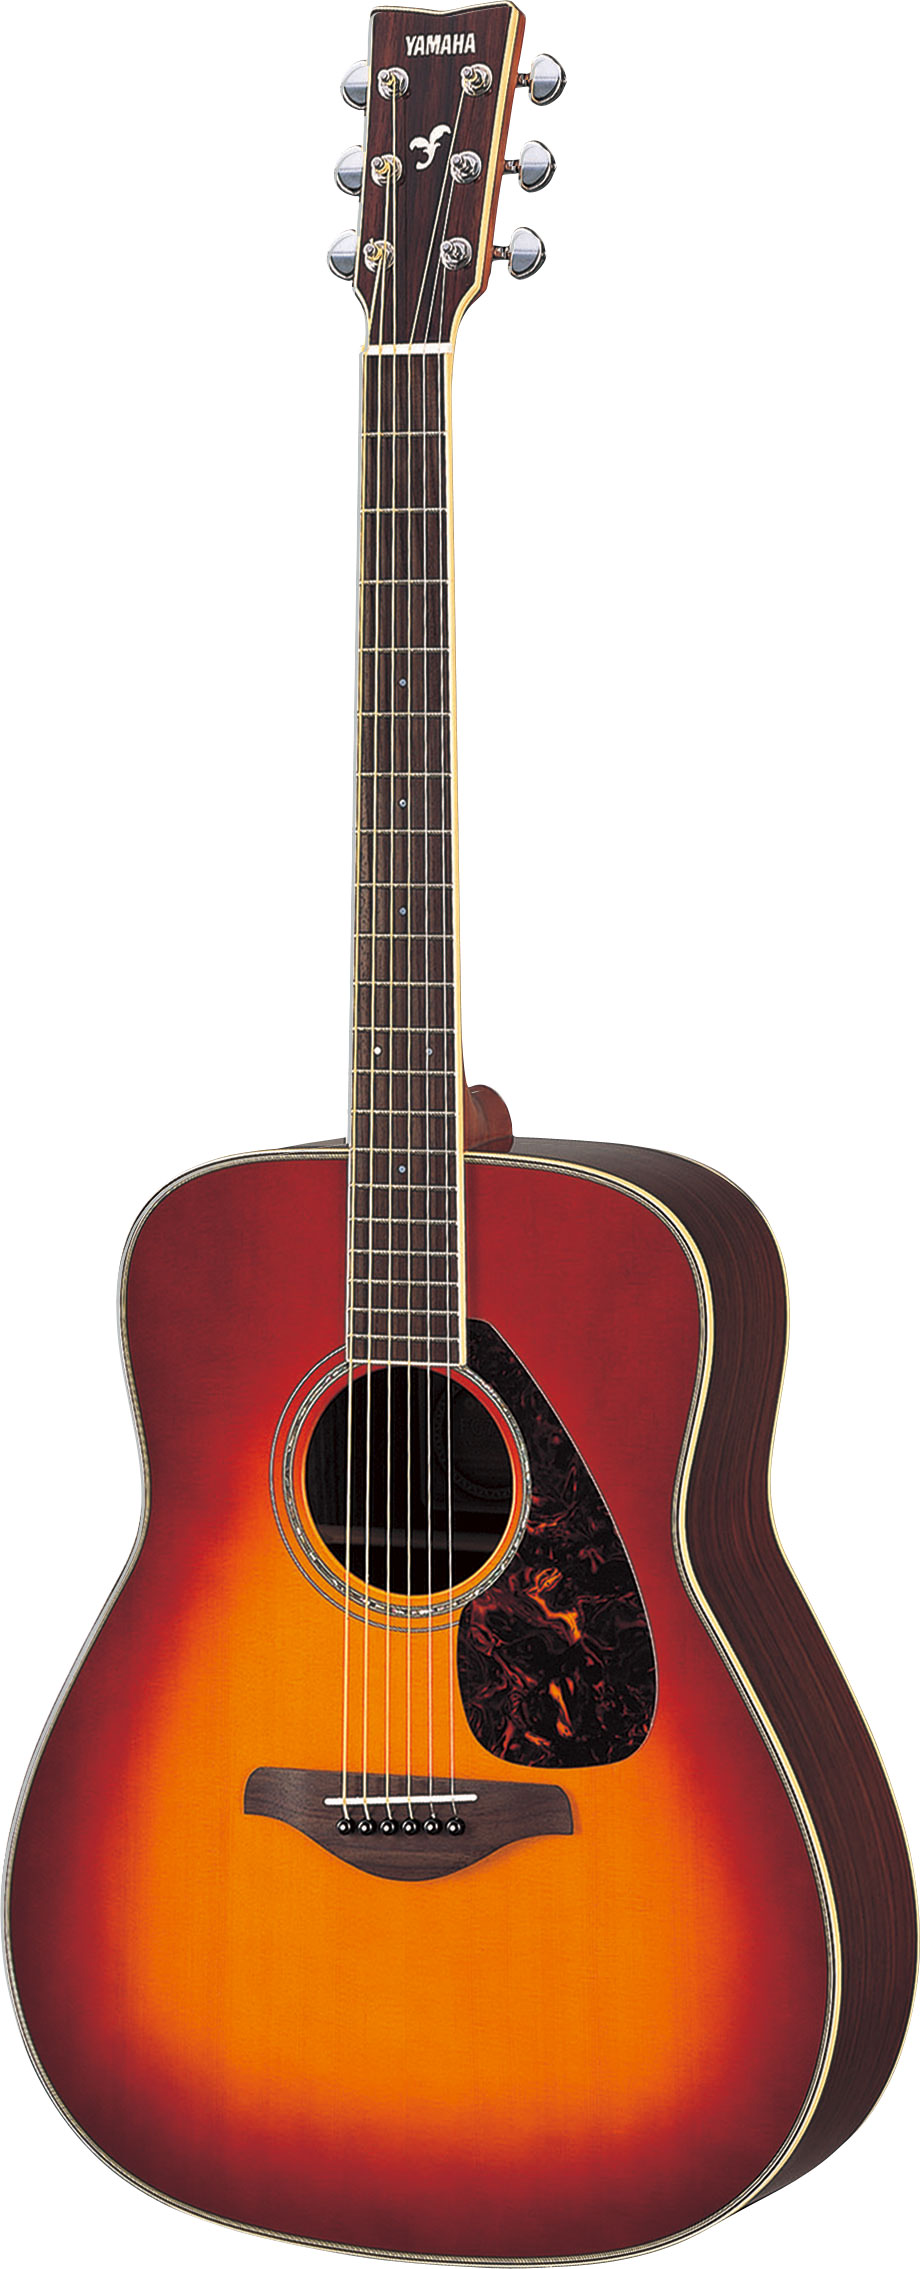 Акустическая гитара Yamaha FG730 VCS